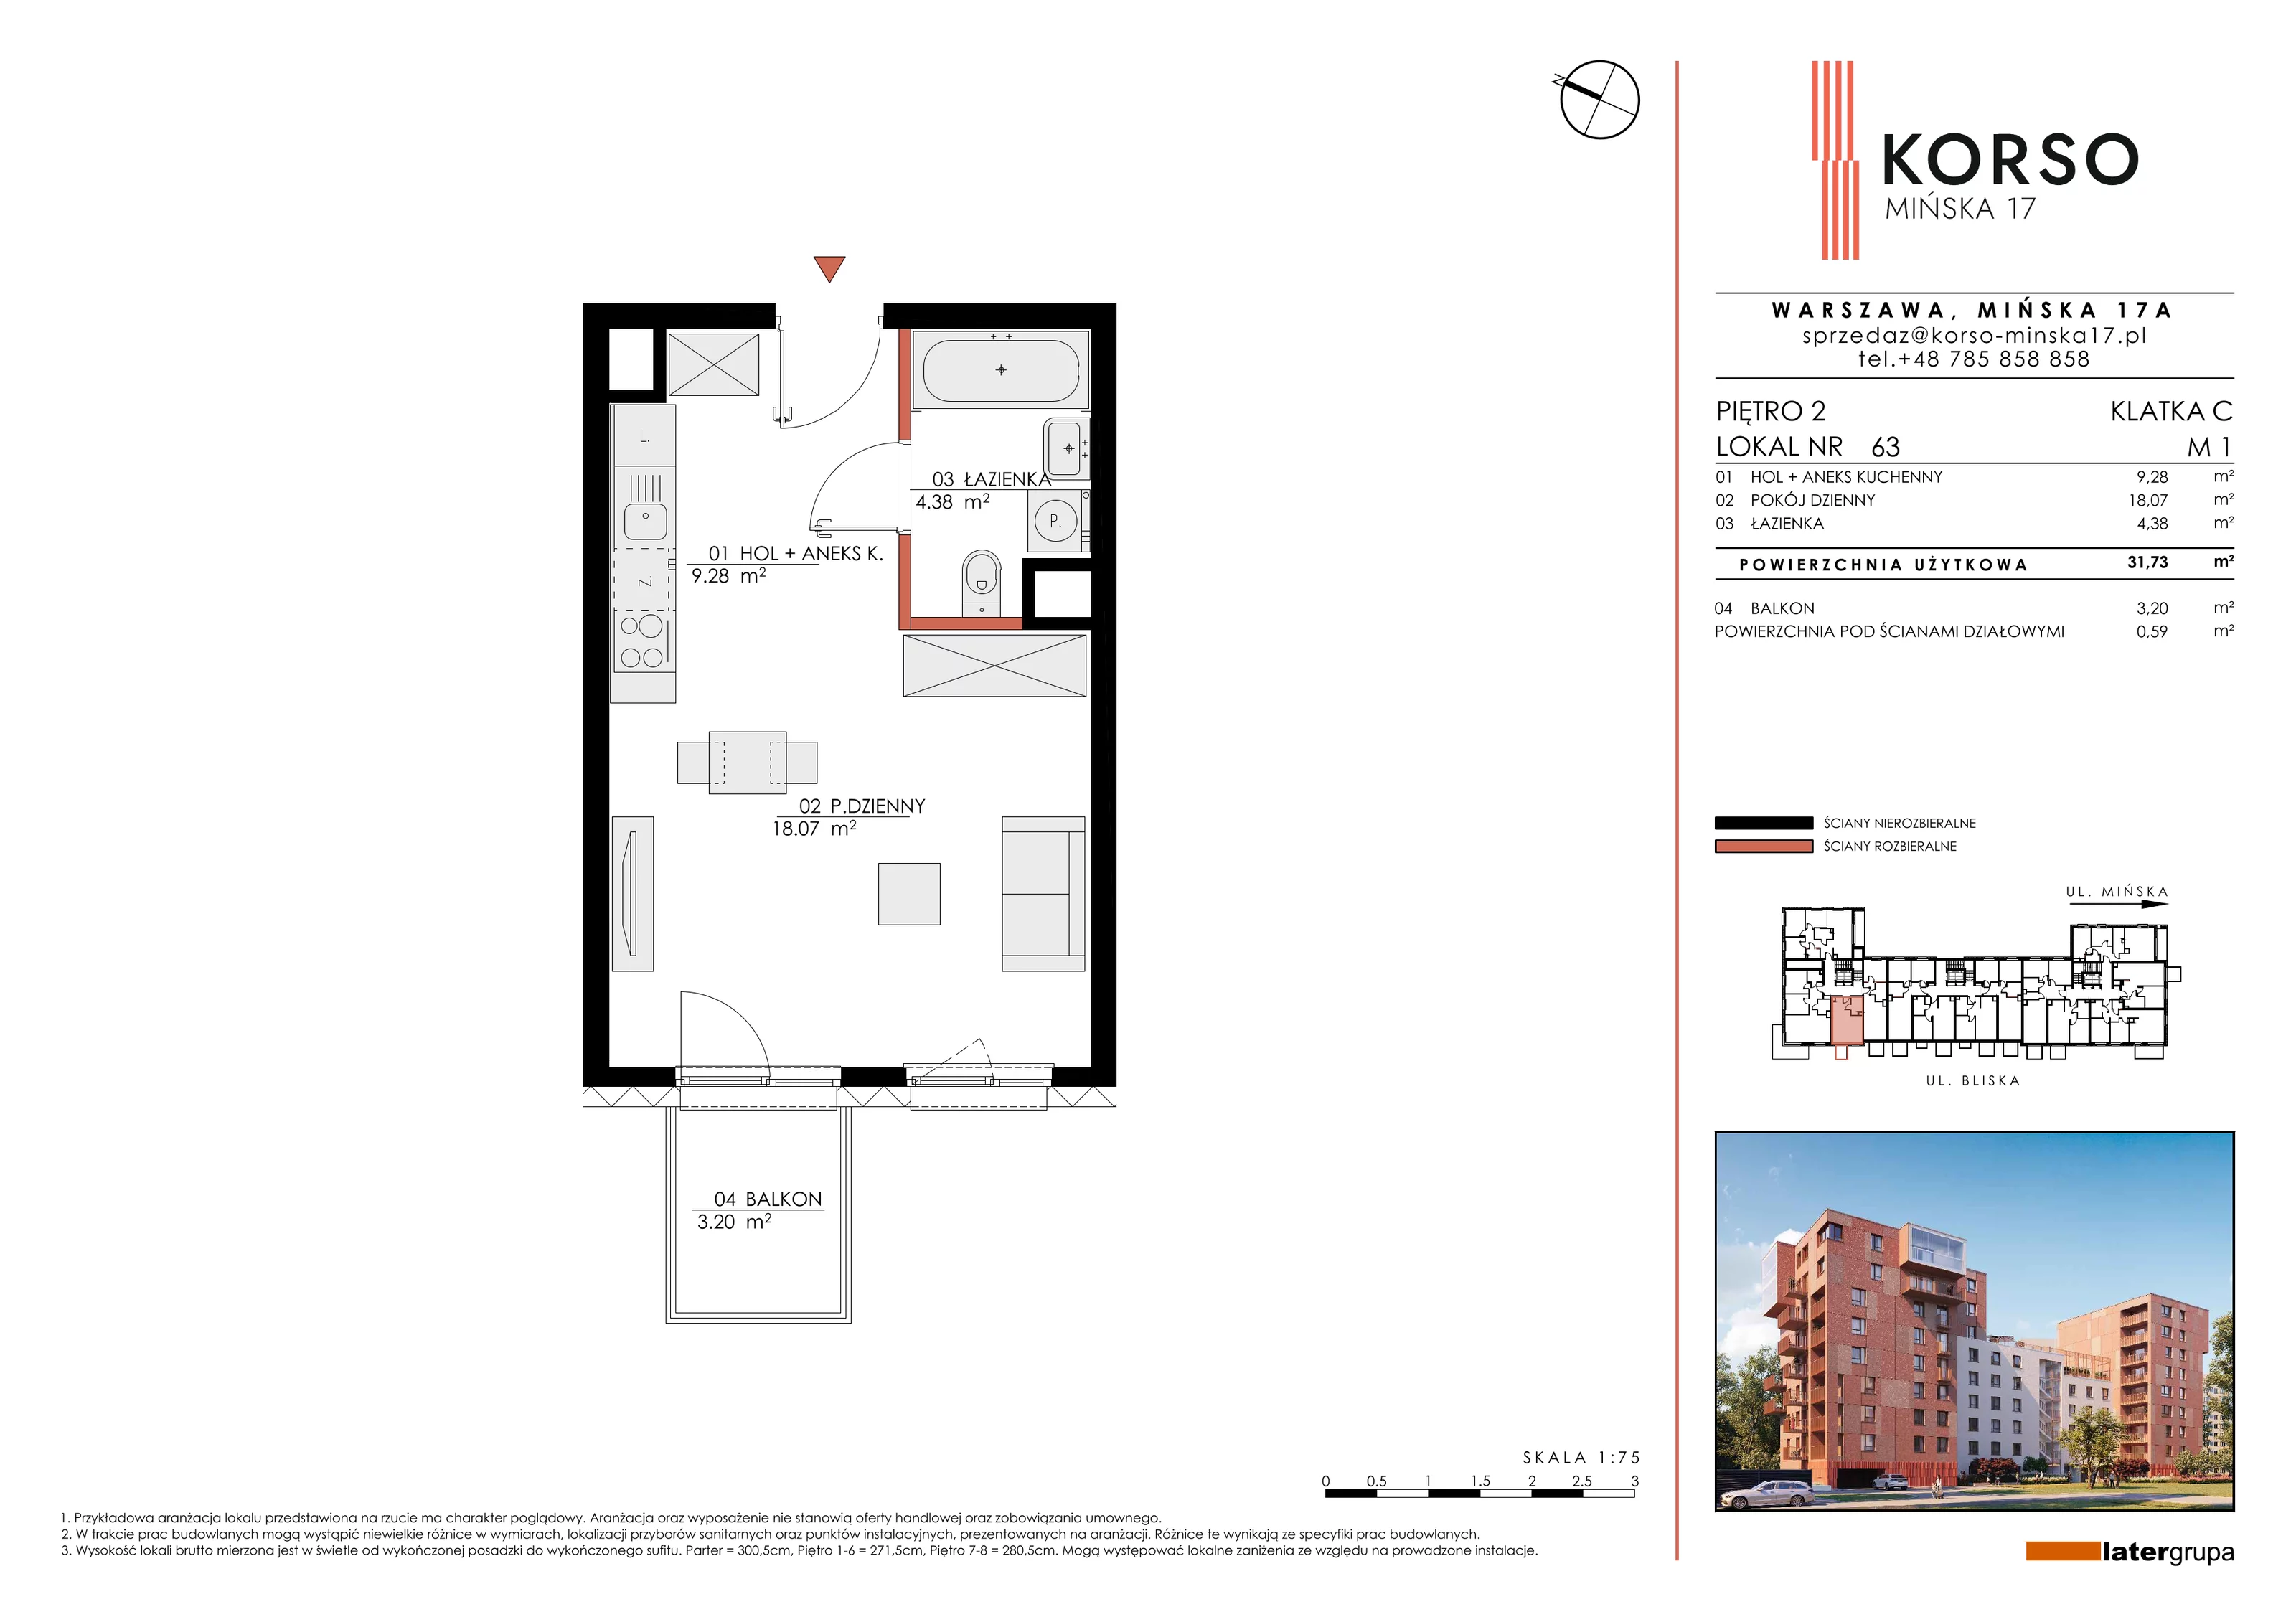 Mieszkanie 31,73 m², piętro 2, oferta nr 63, KORSO Mińska 17, Warszawa, Praga Południe, Kamionek, ul. Mińska 17